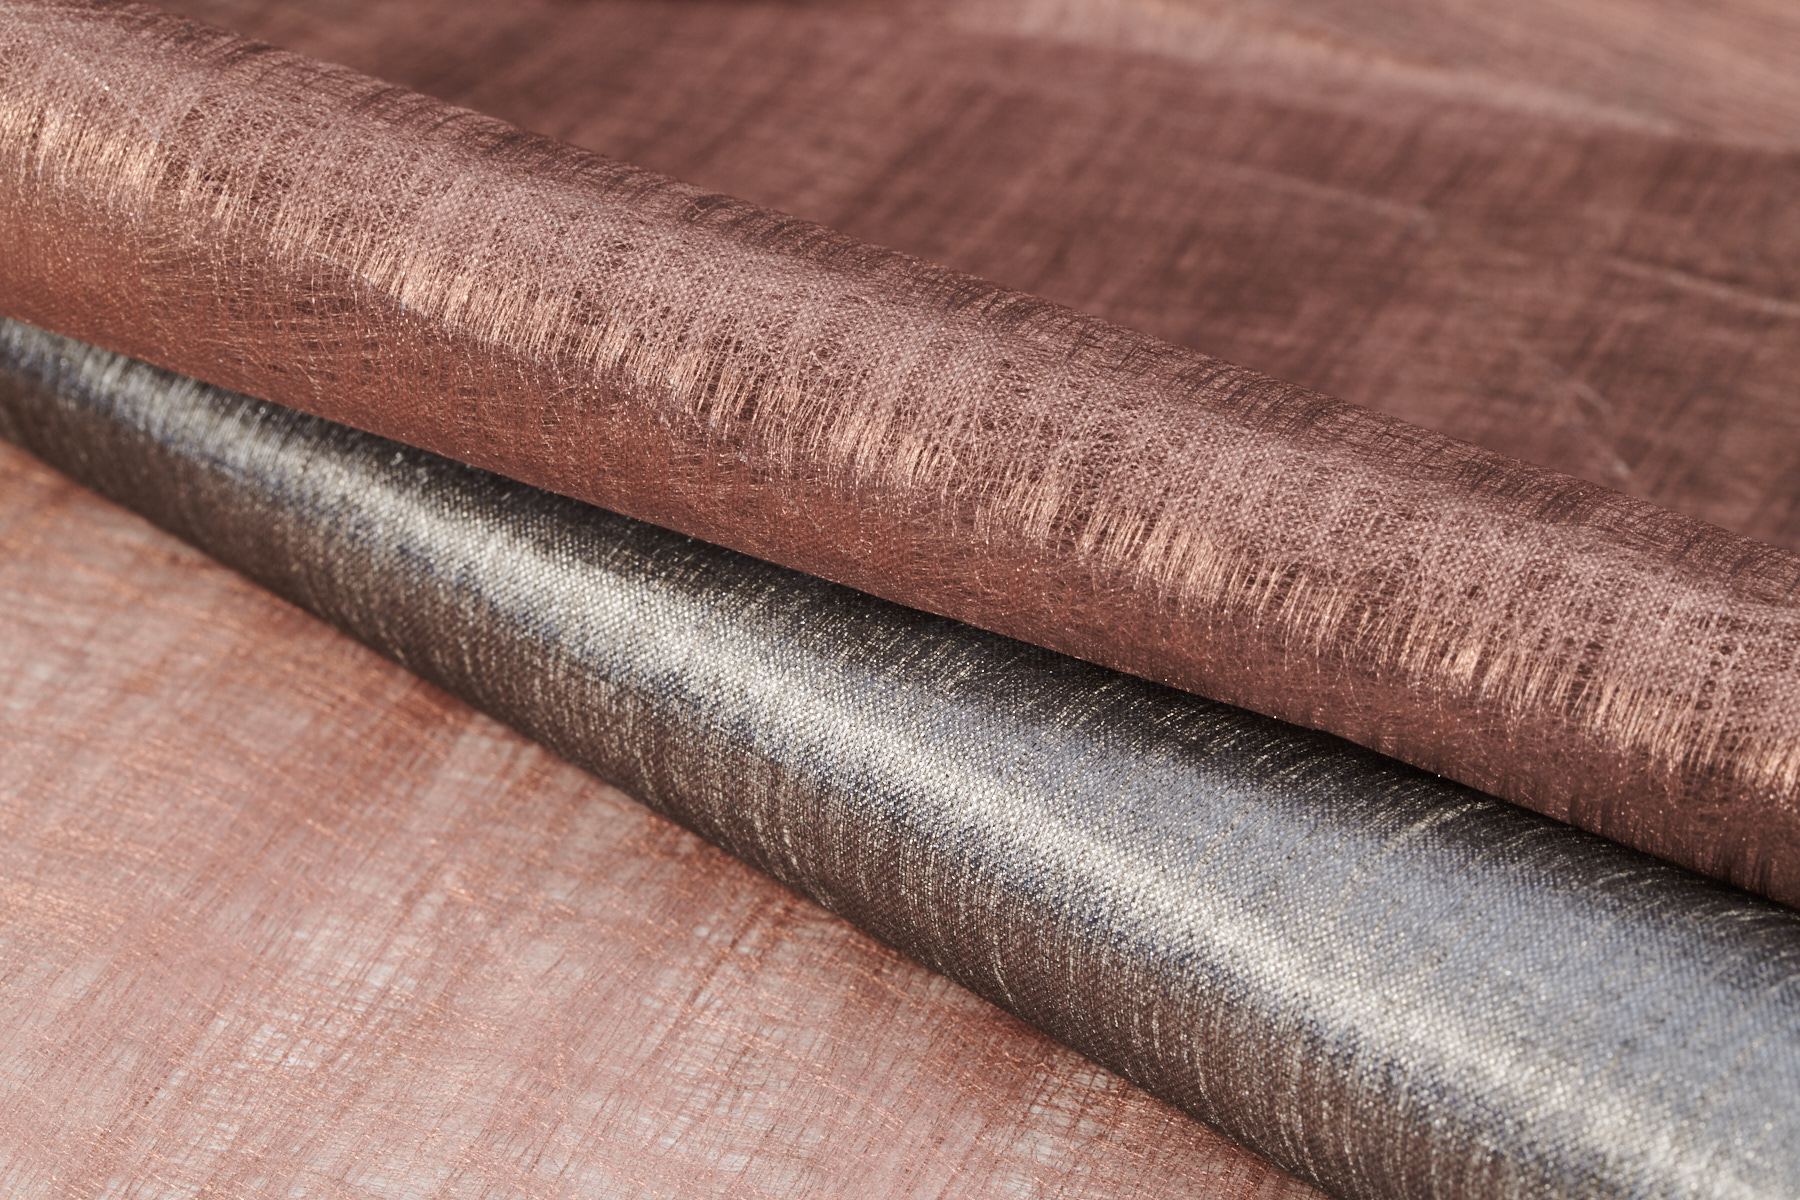 Metallisierung von Textilien